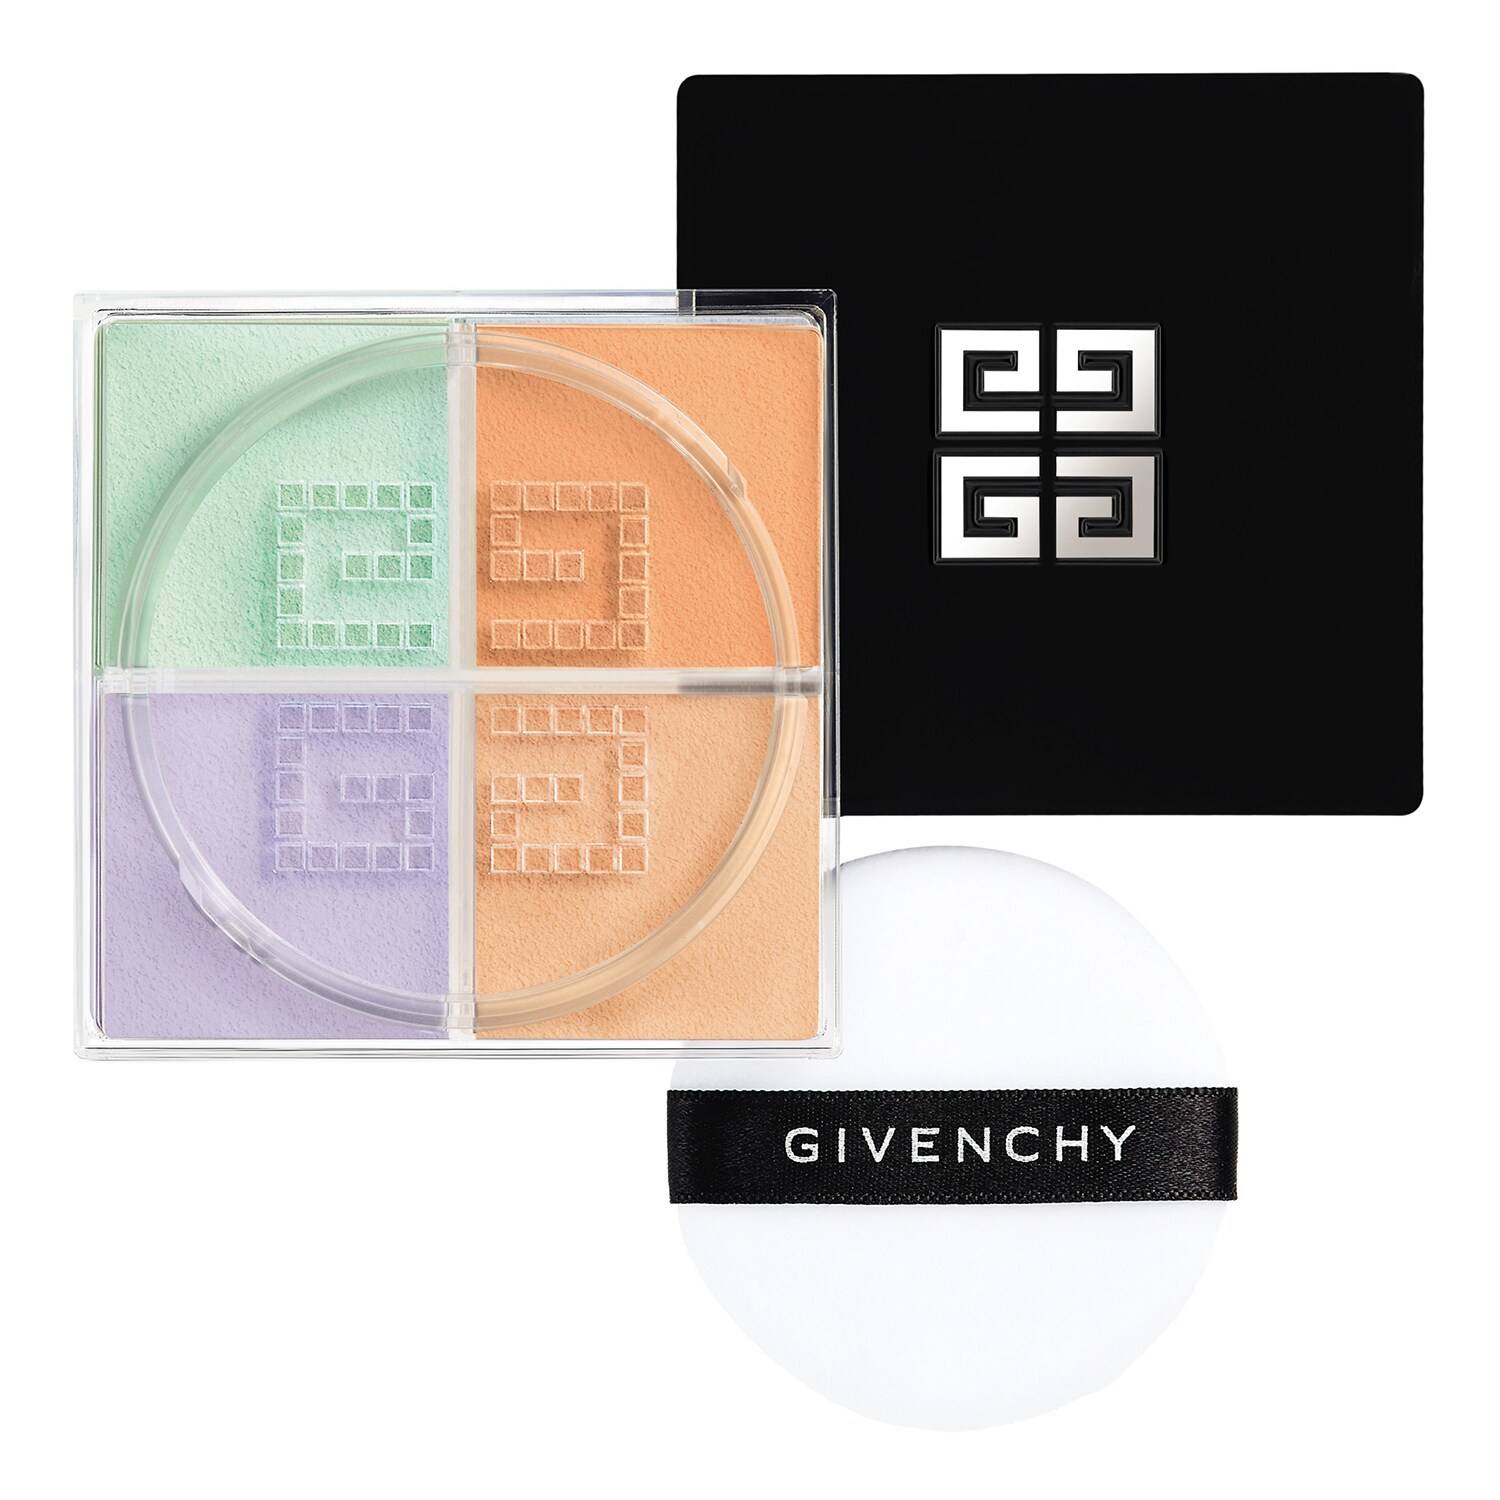 Givenchy Prisme Libre Mini 4-Color Loose Powder Mini 4G - Sephora Exclusive Ndeg4 - Mousseline Acidu